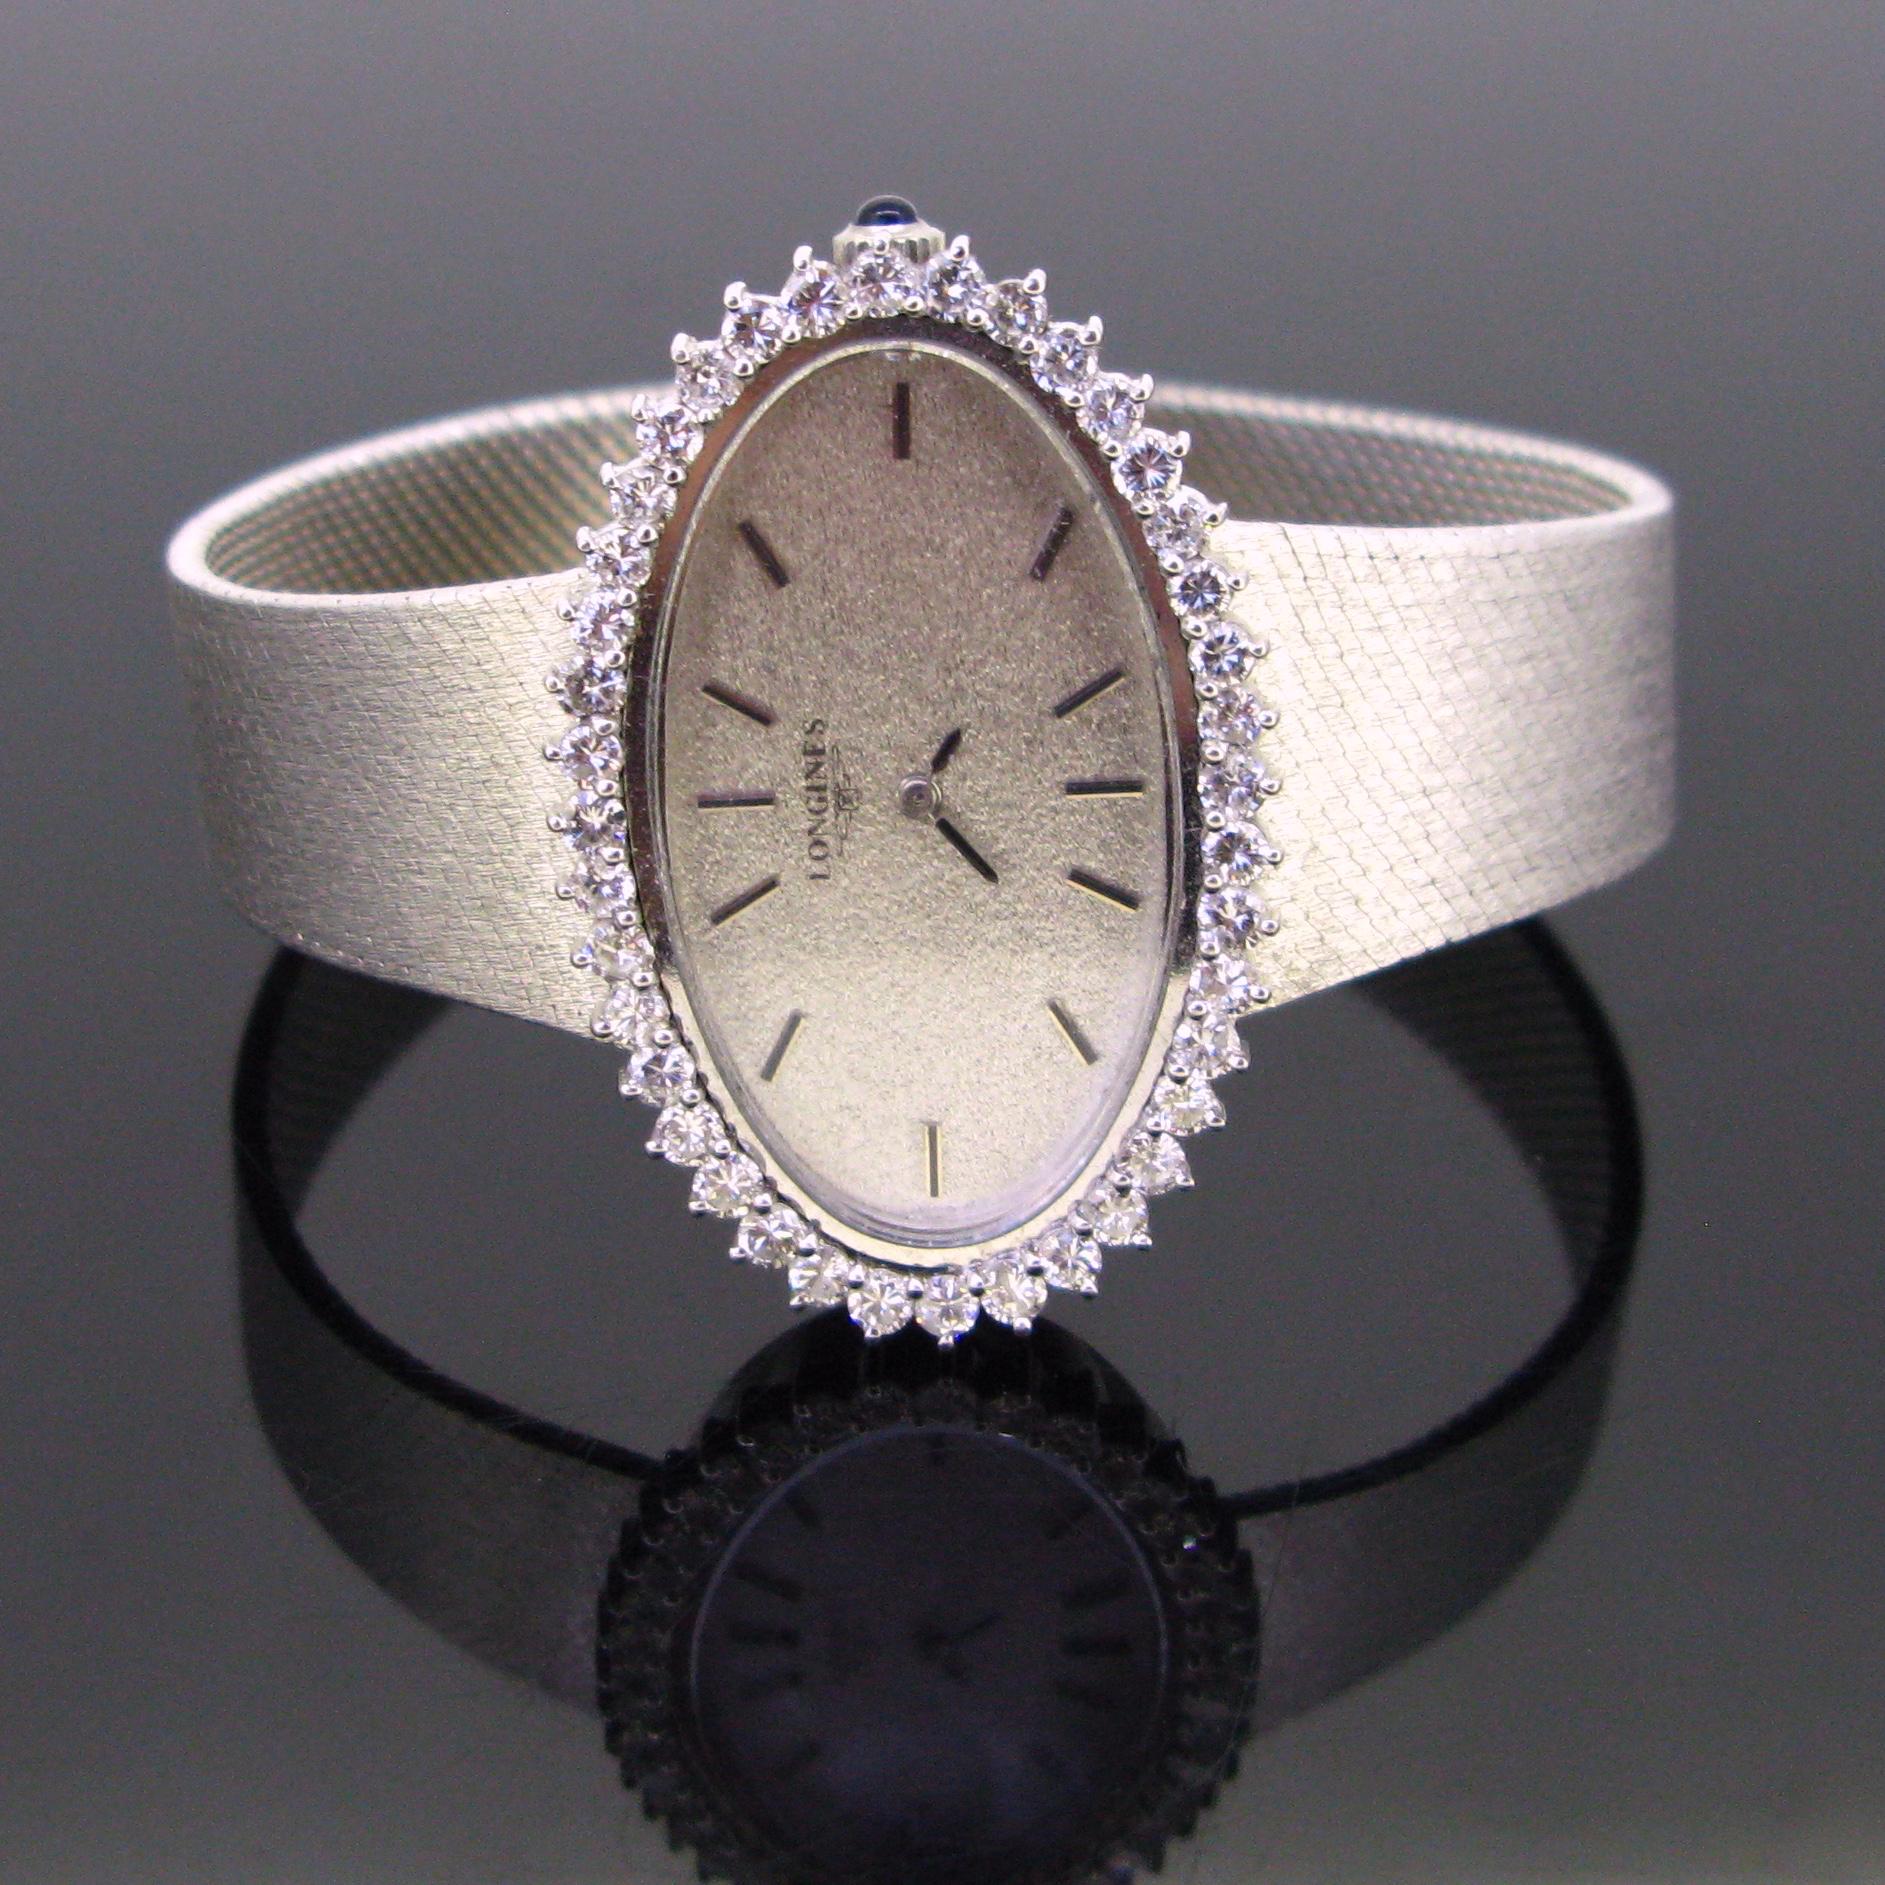 Une ravissante montre-bracelet en diamants fabriquée par Longines. Celui-ci est fabriqué en or blanc 18t. Le cadran est entouré de 40 diamants taille brillant. Le poids total approximatif en carats est de 2ct (G/VVS). Elle possède un fermoir bijou